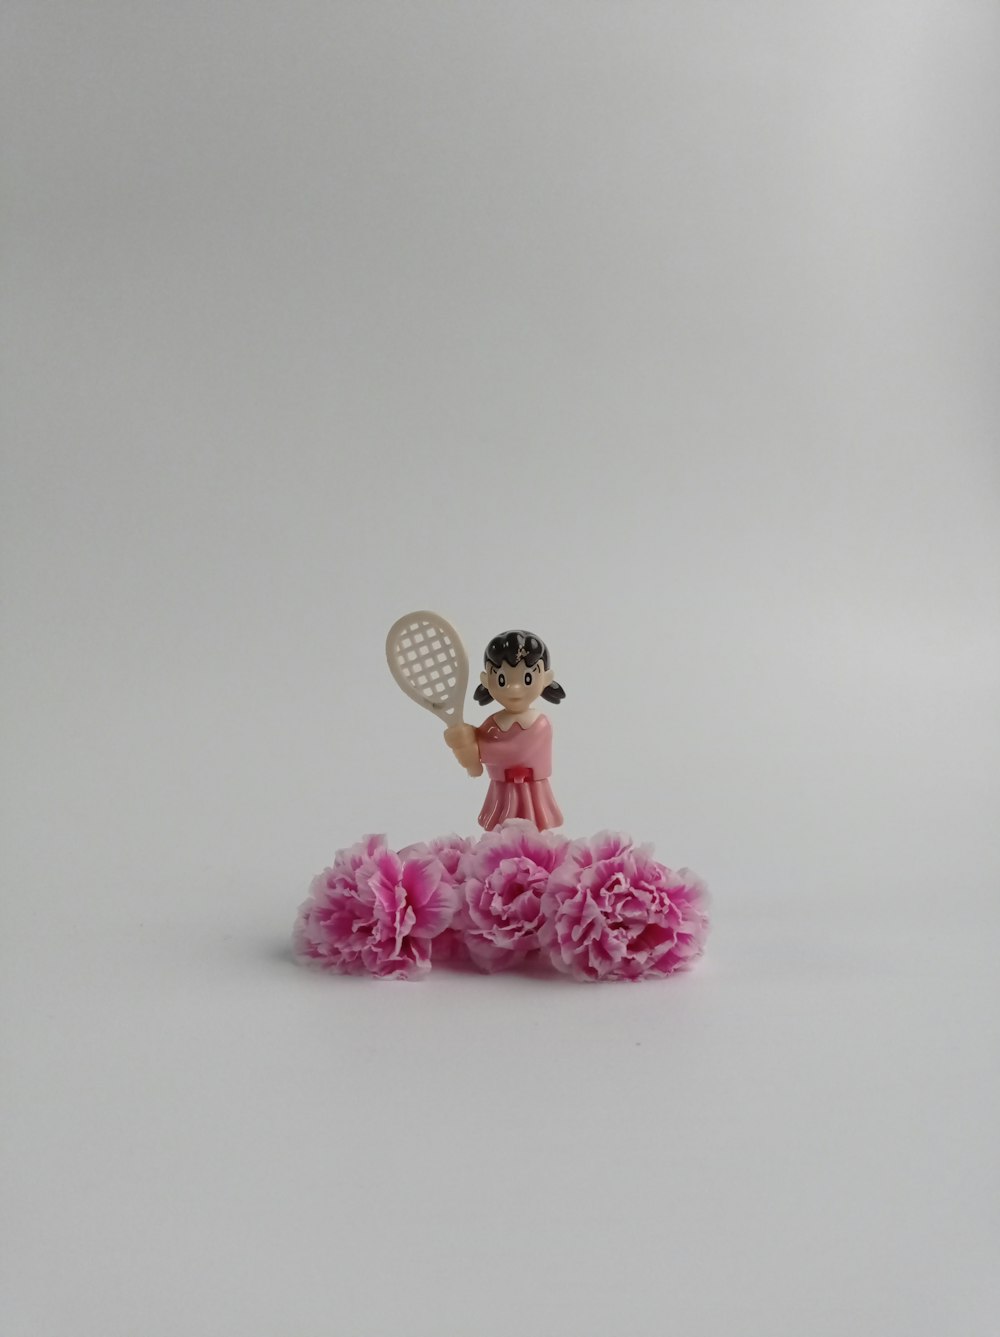 a figurine of a girl holding a tennis racquet